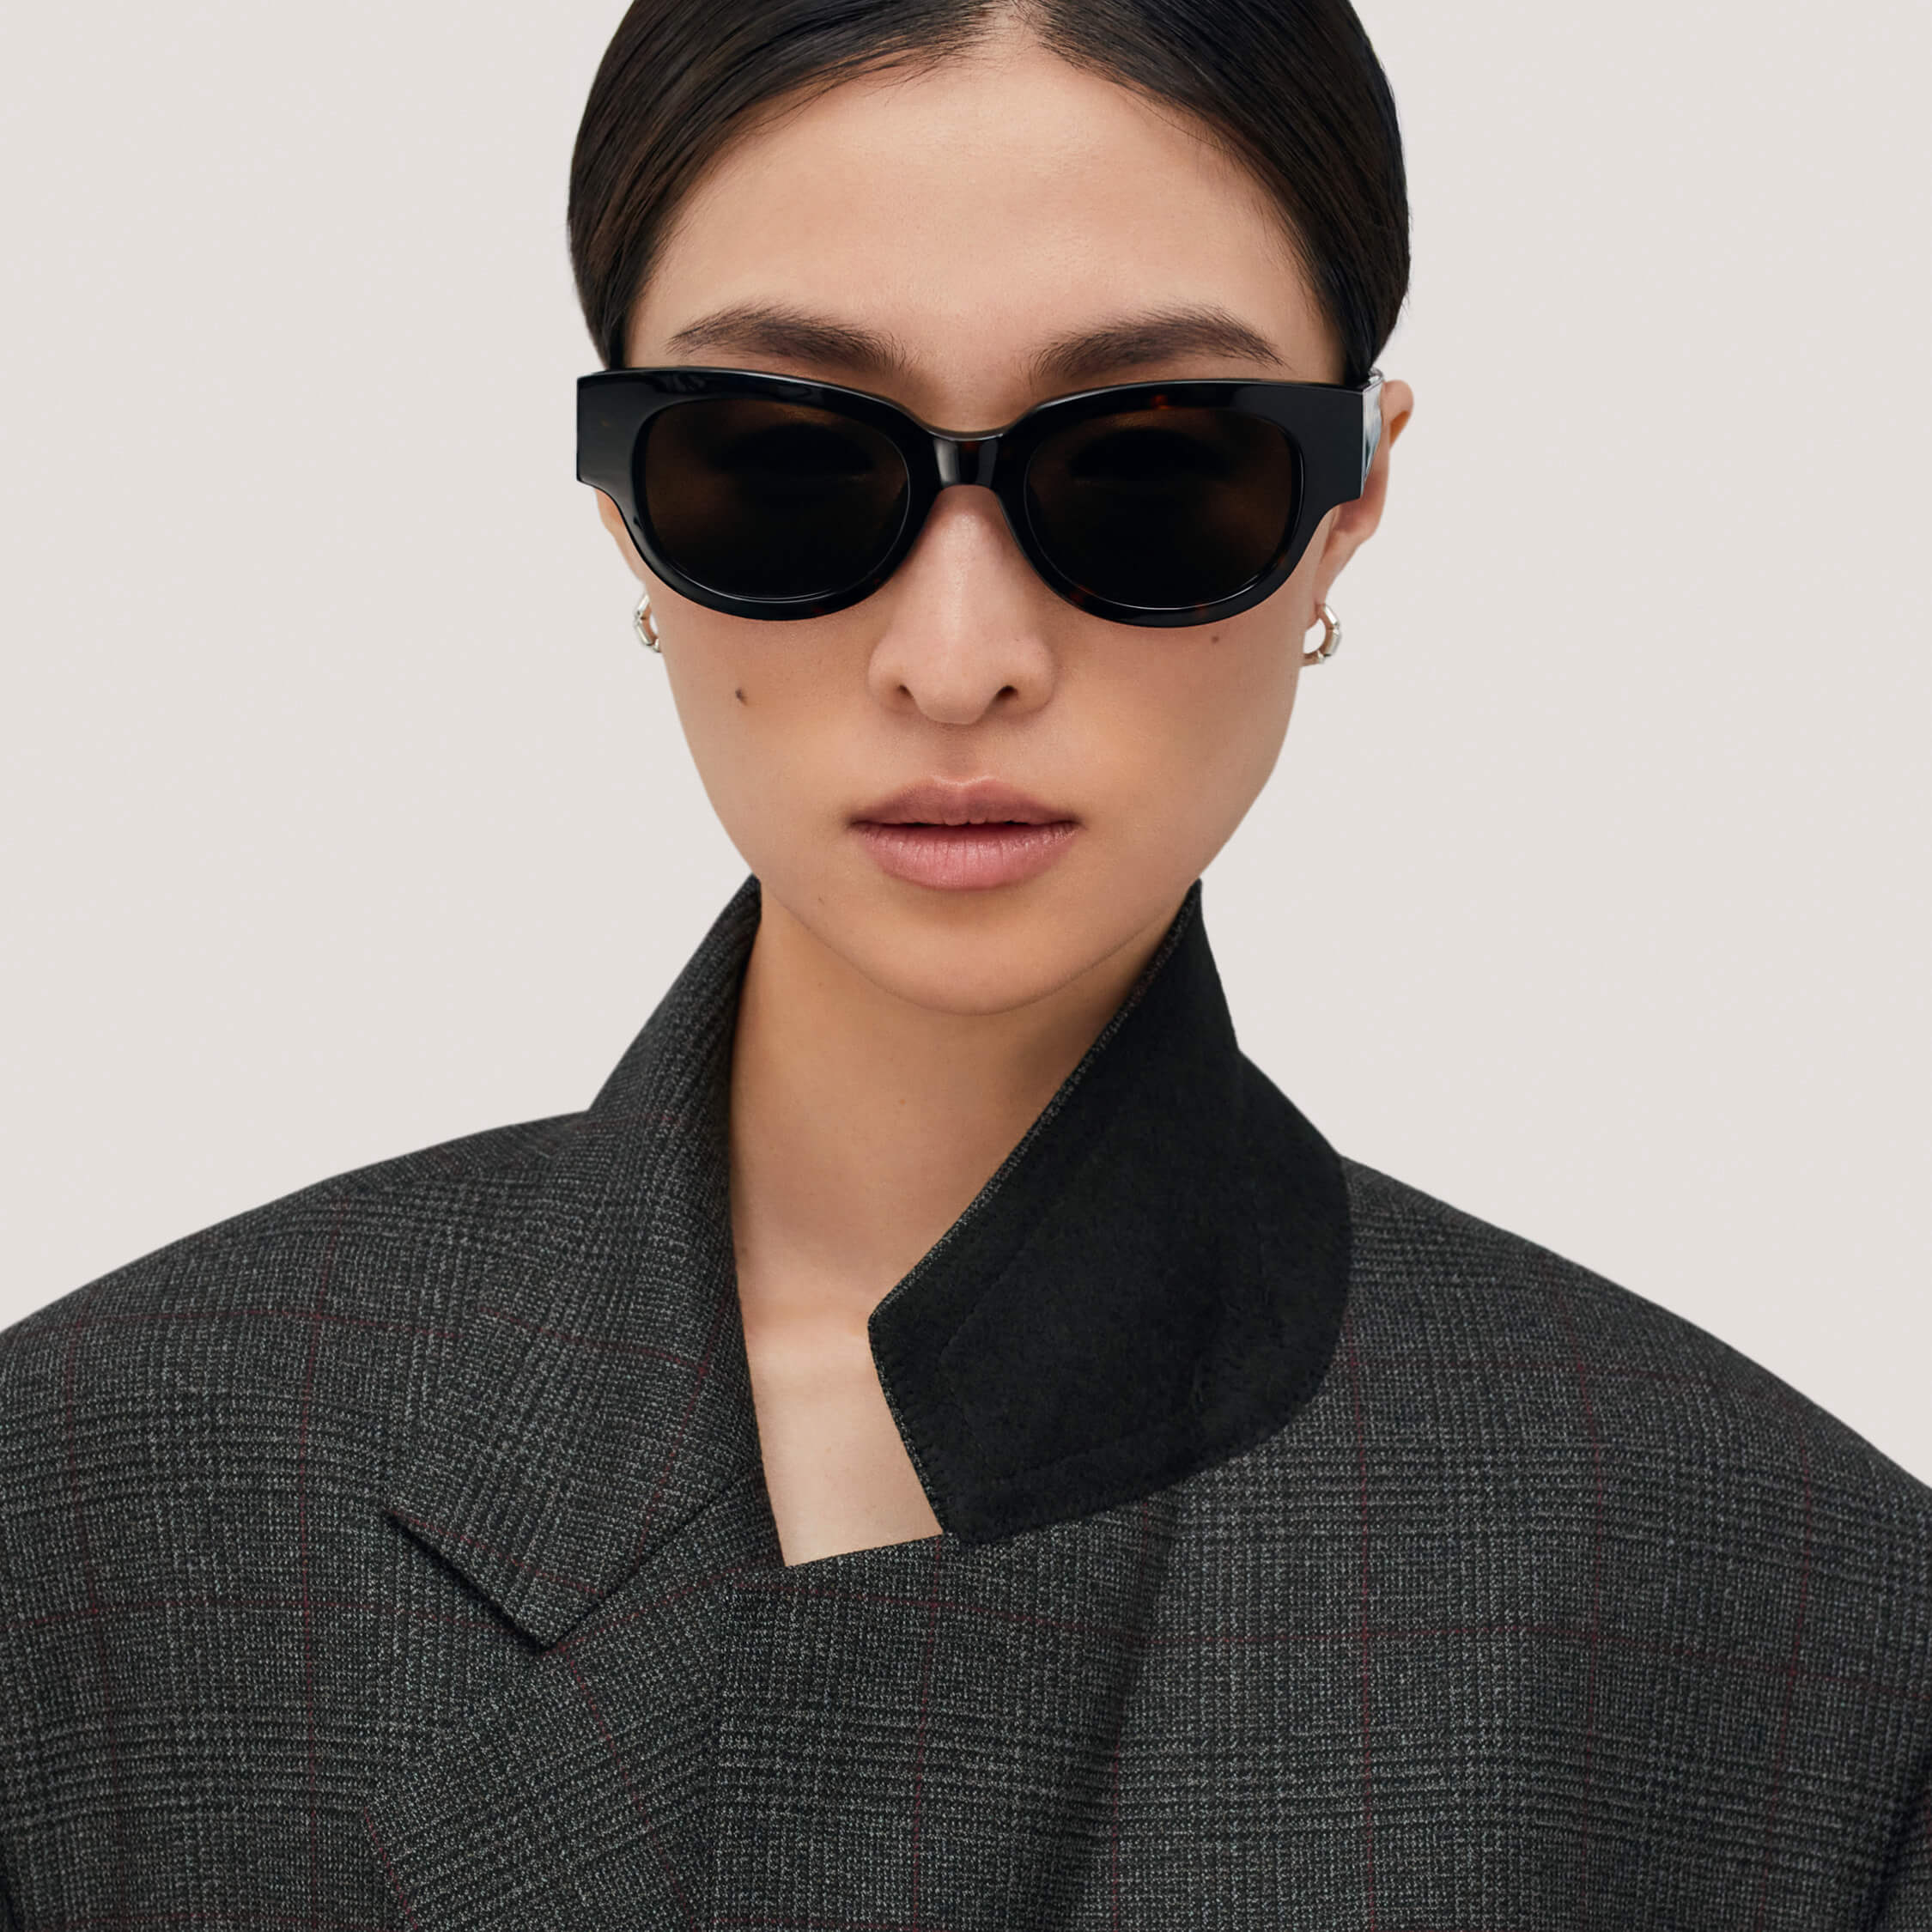 Bottega Veneta Glasses & Sunglasses – All Eyes On Me